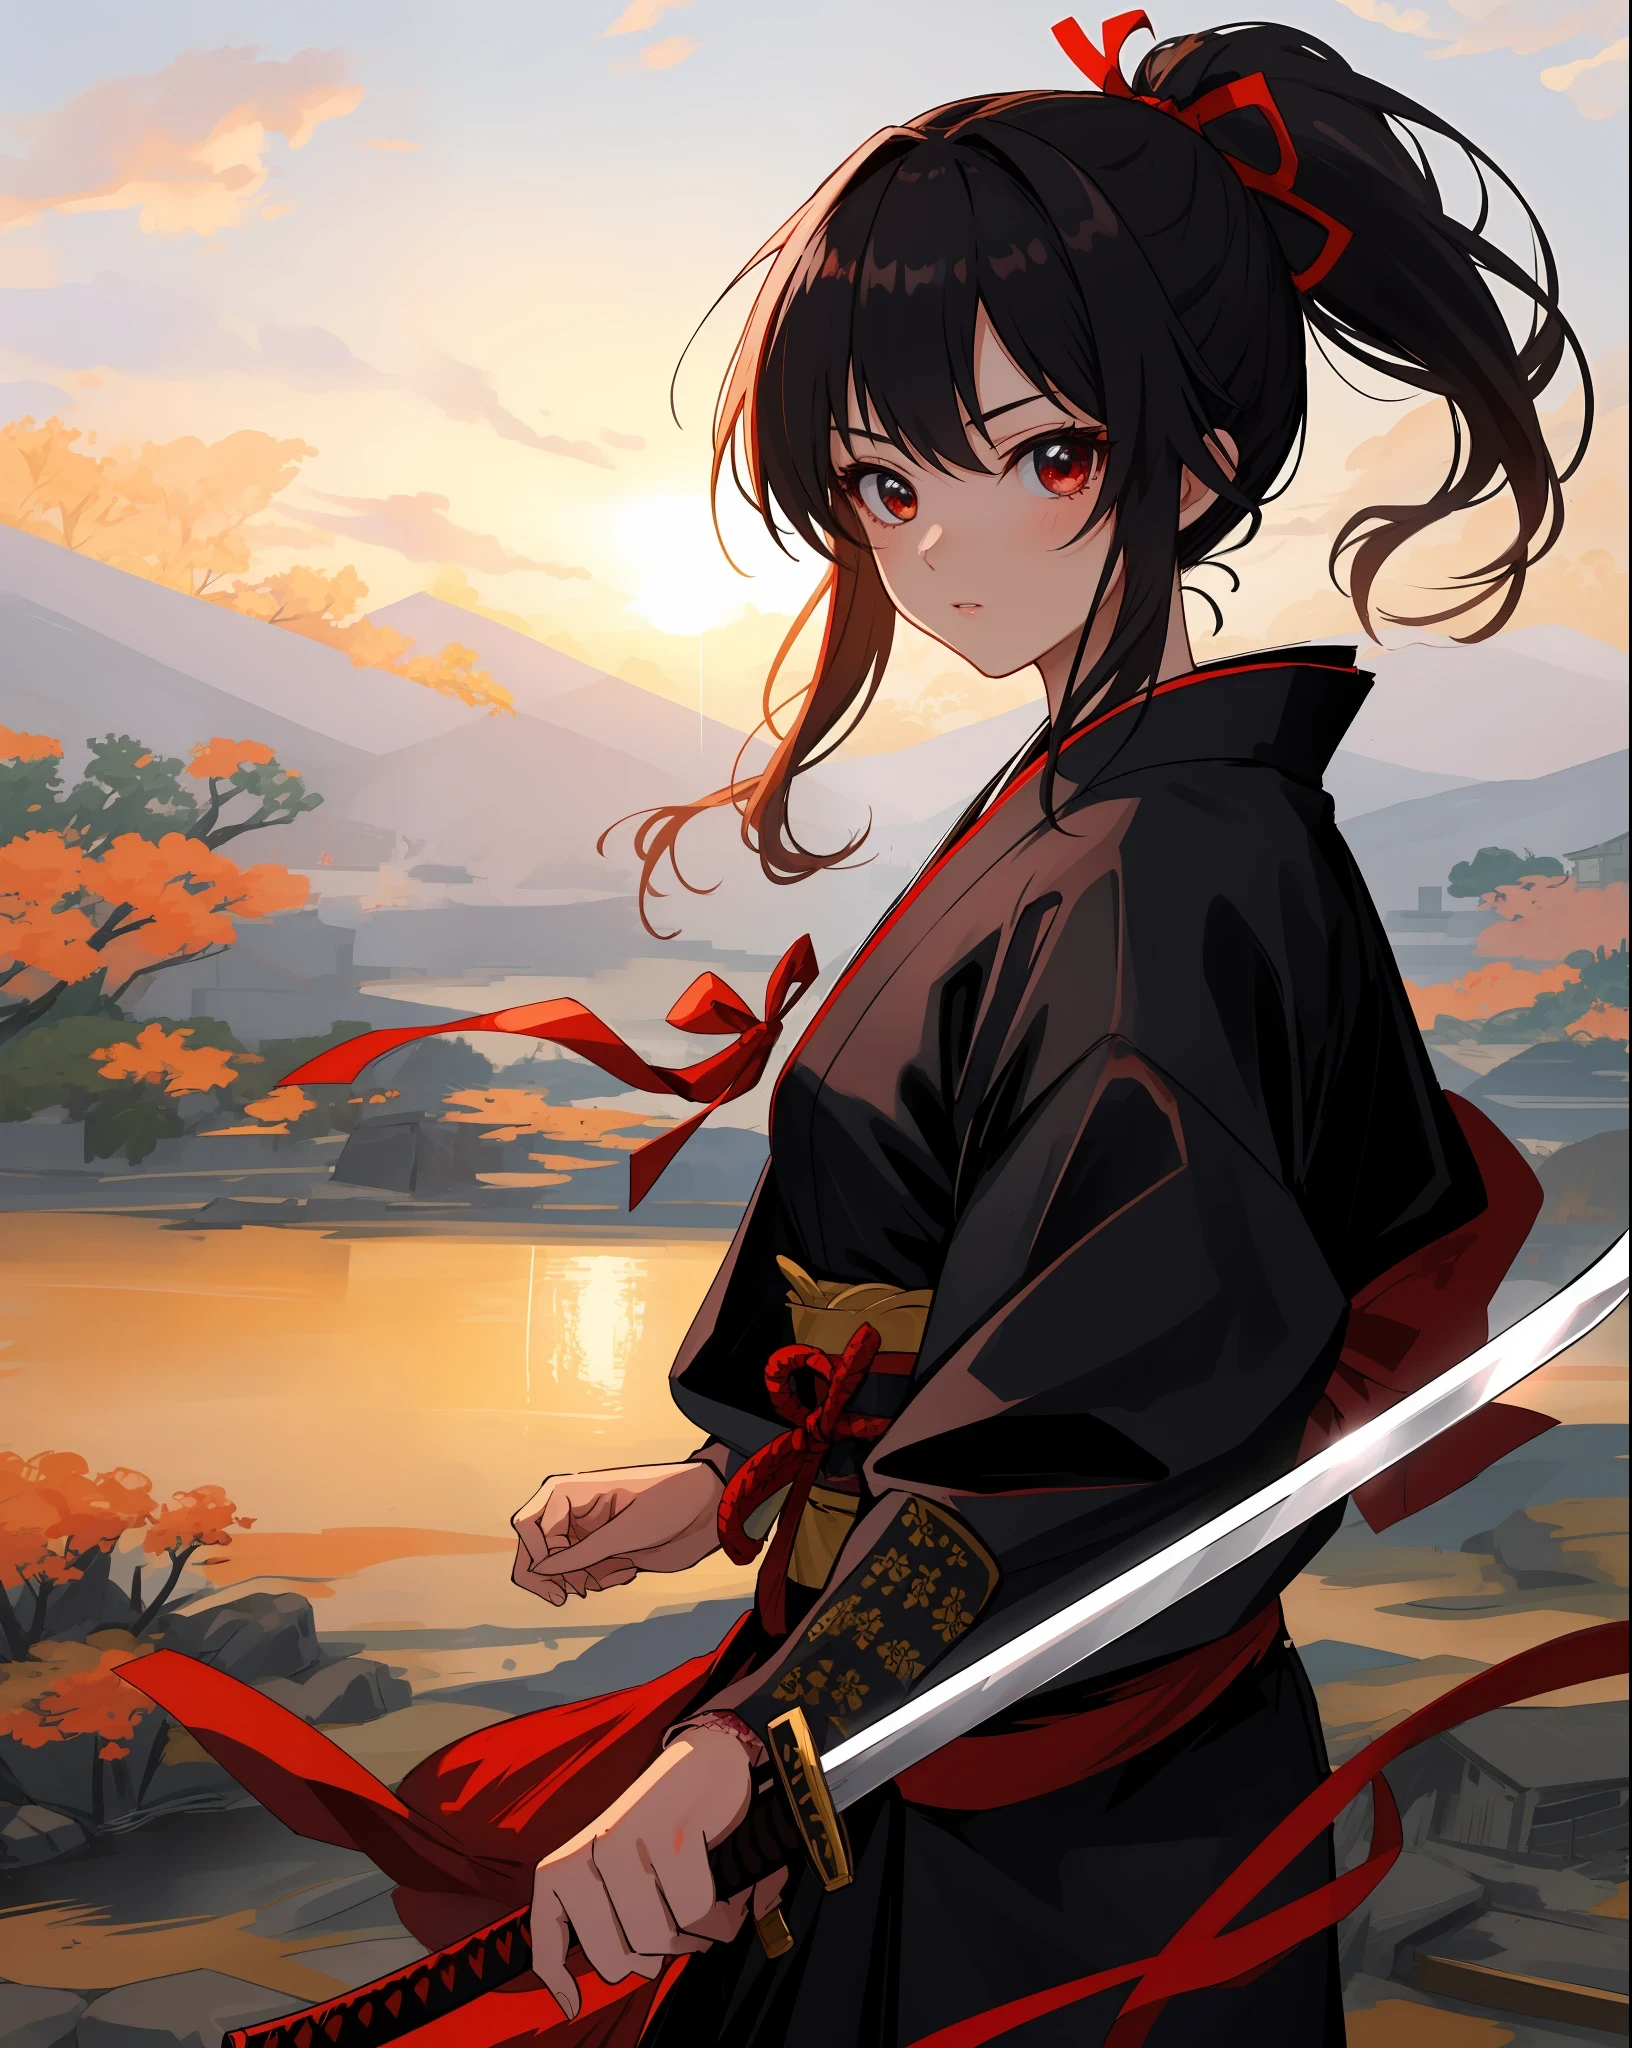 chef-d&#39;œuvre, Très haute qualité, super détail, Dessin parfait, seulement, belle fille, samouraï brandissant l&#39;épée, Queue de cheval noire, cheveux attachés avec un gros ruban rouge, Equipé de deux épées japonaises, Fureur.